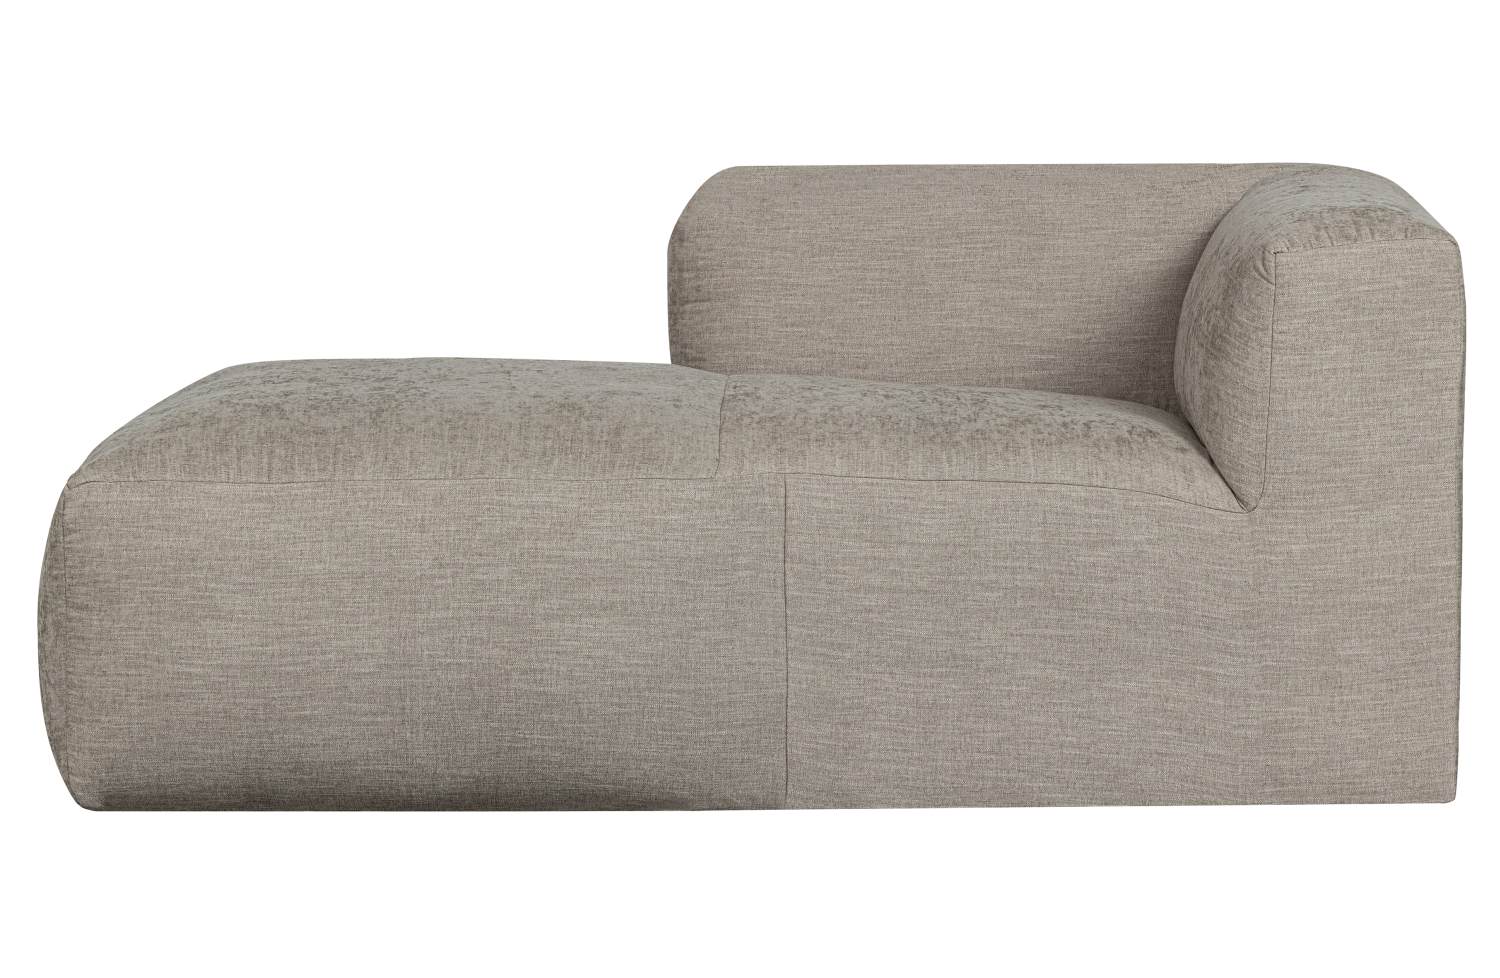 Das Modulsofa Yent als Chaise-Longue überzeugt mit seinem modernen Design. Gefertigt wurde es aus Webstoff, welcher einen hellgrauen Farbton besitzt. Das Sofa ist in der Ausführung Rechts. Die Sitzhöhe des Sofas beträgt 47 cm.